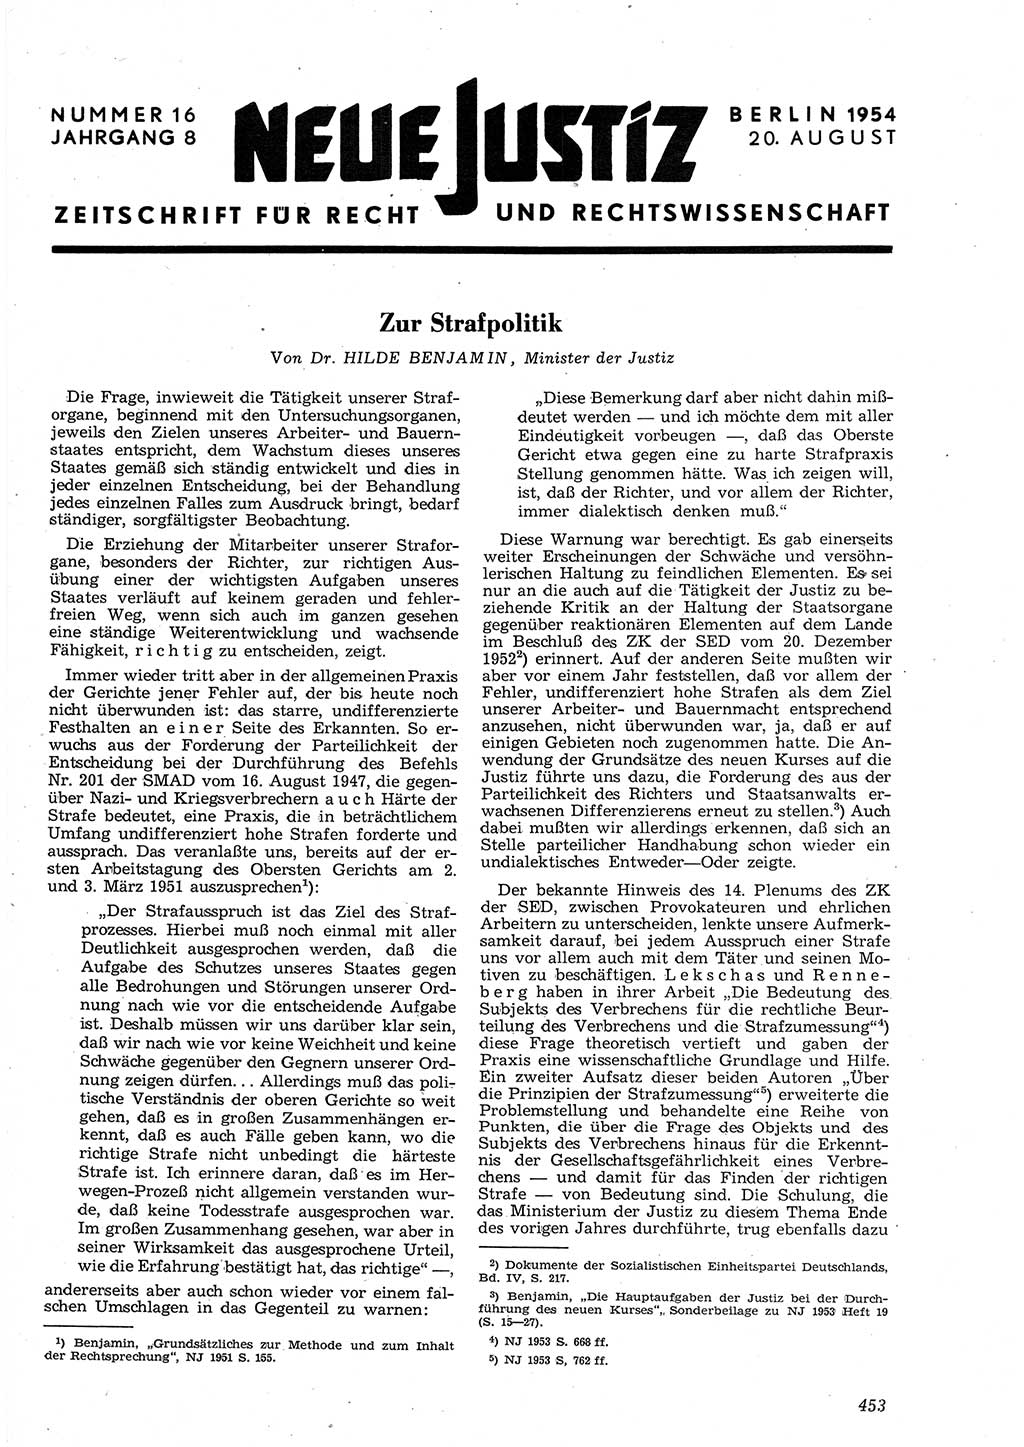 Neue Justiz (NJ), Zeitschrift für Recht und Rechtswissenschaft [Deutsche Demokratische Republik (DDR)], 8. Jahrgang 1954, Seite 453 (NJ DDR 1954, S. 453)